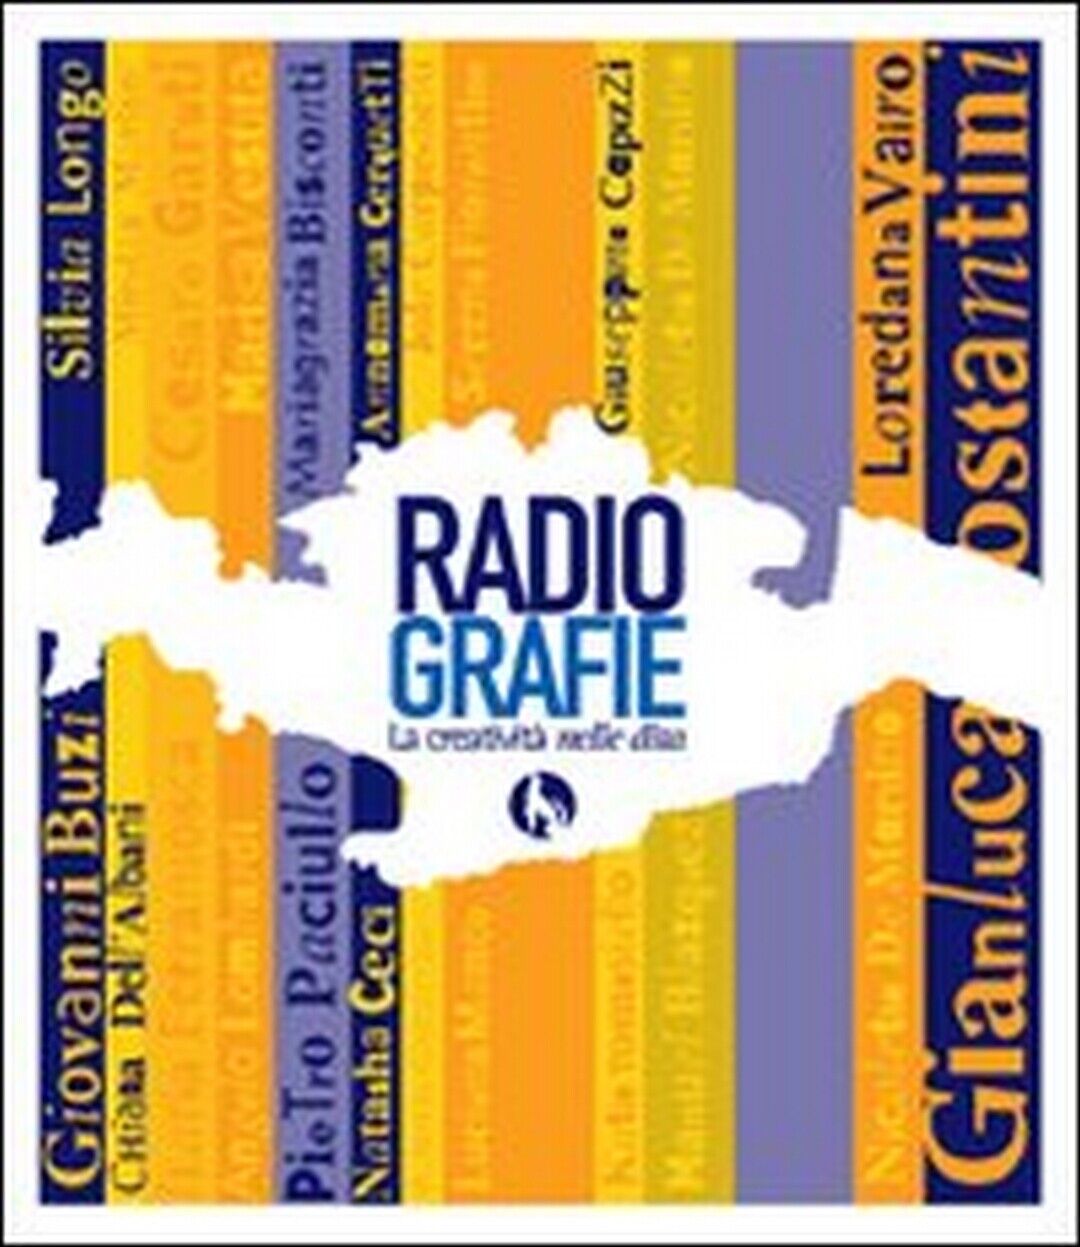 RadioGrafie. La creativit? nelle dita  di O. Piliego, A. Rosato, M. Marino,  201